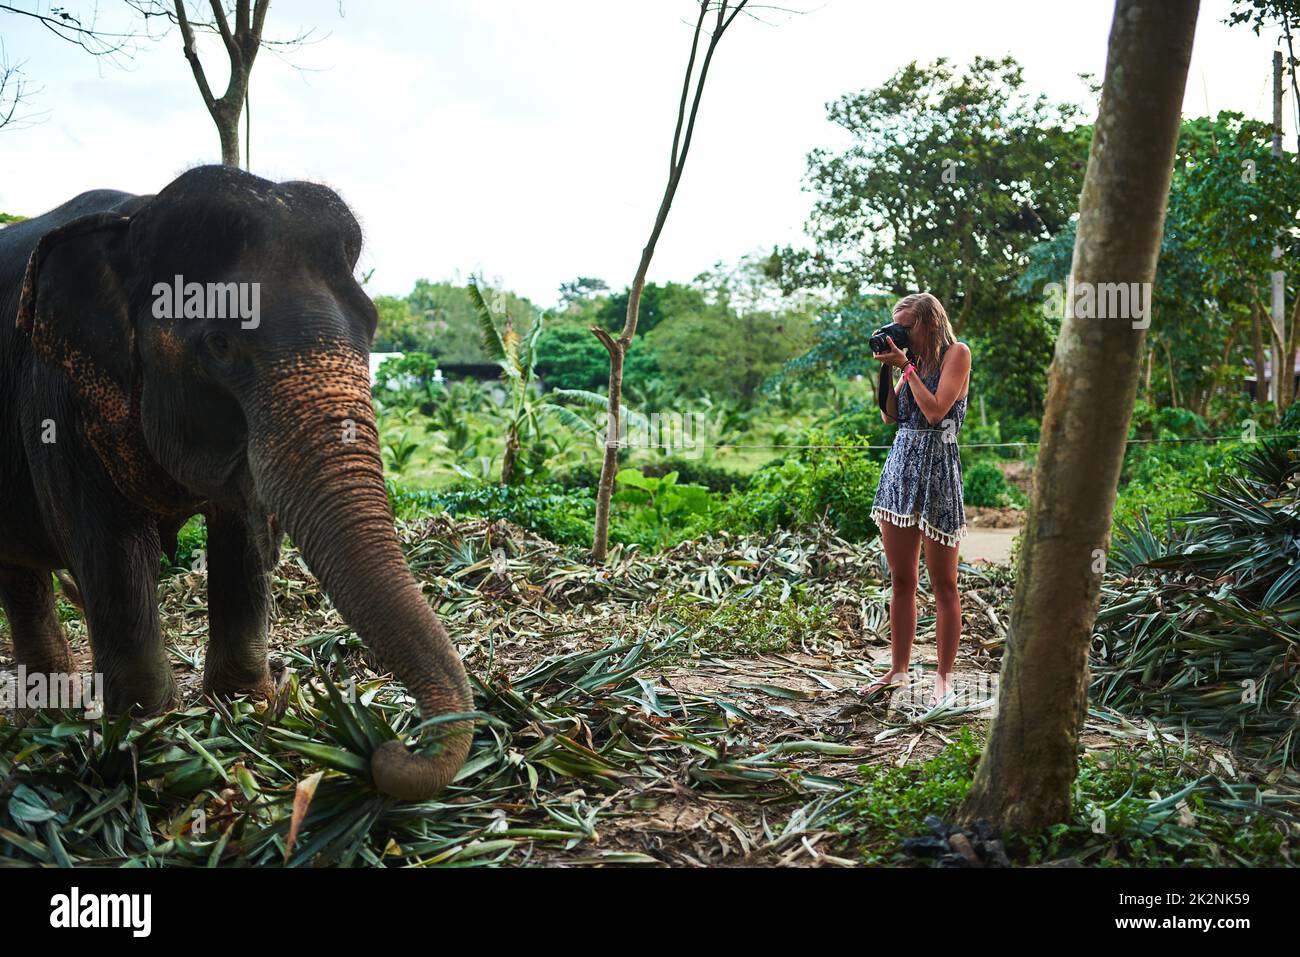 Tous les photographes rêvent. Photo d'un jeune photographe prenant une photo d'un éléphant d'Asie. Banque D'Images